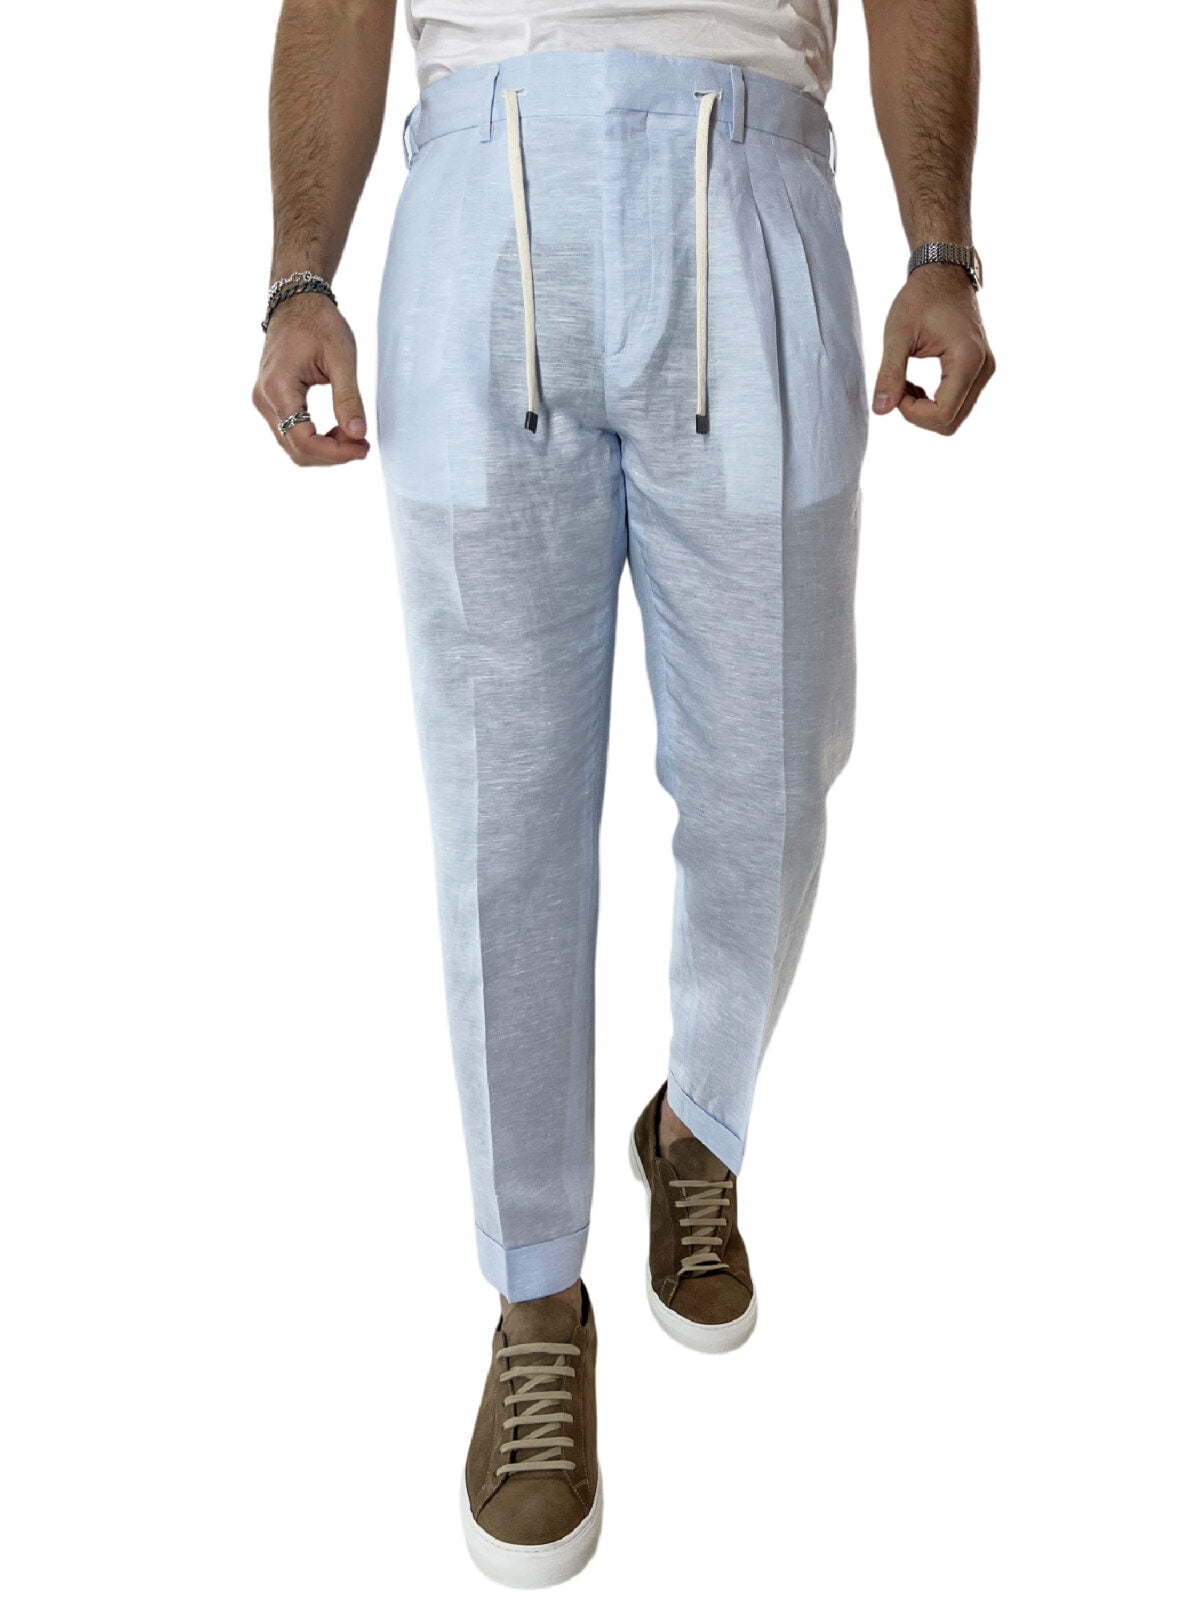 Pantalaccio uomo celeste in lino e cotone tasca america con doppia pence e laccio in vita risvolto 4cm